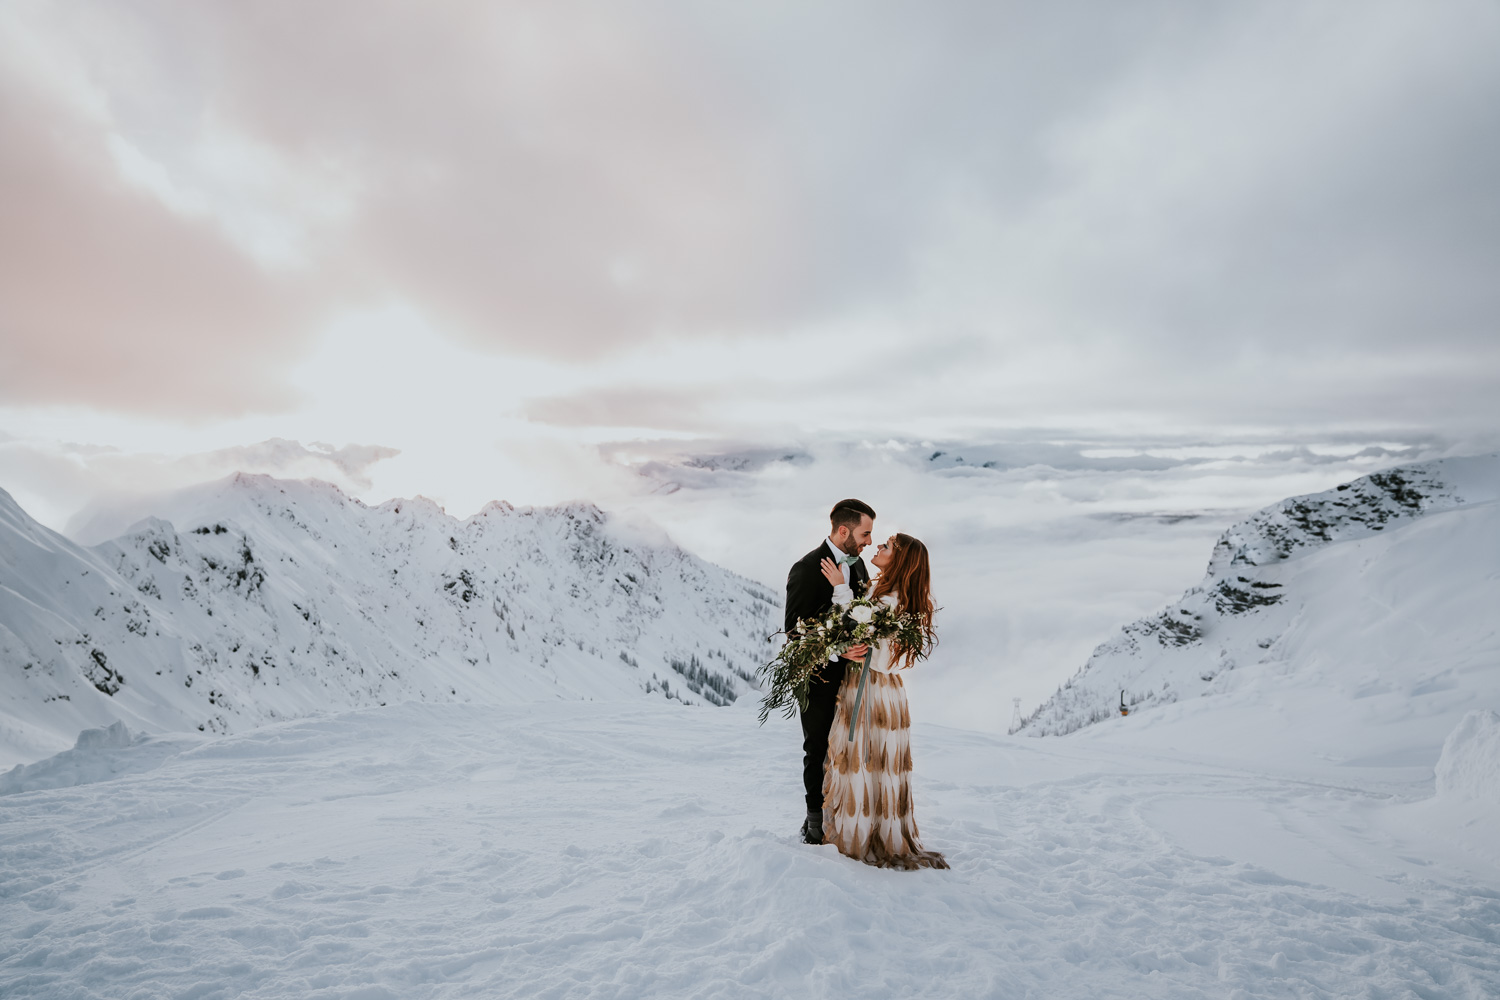 Brautstyling von Daniela Schatz aus München – Brautpaar in den Bergen